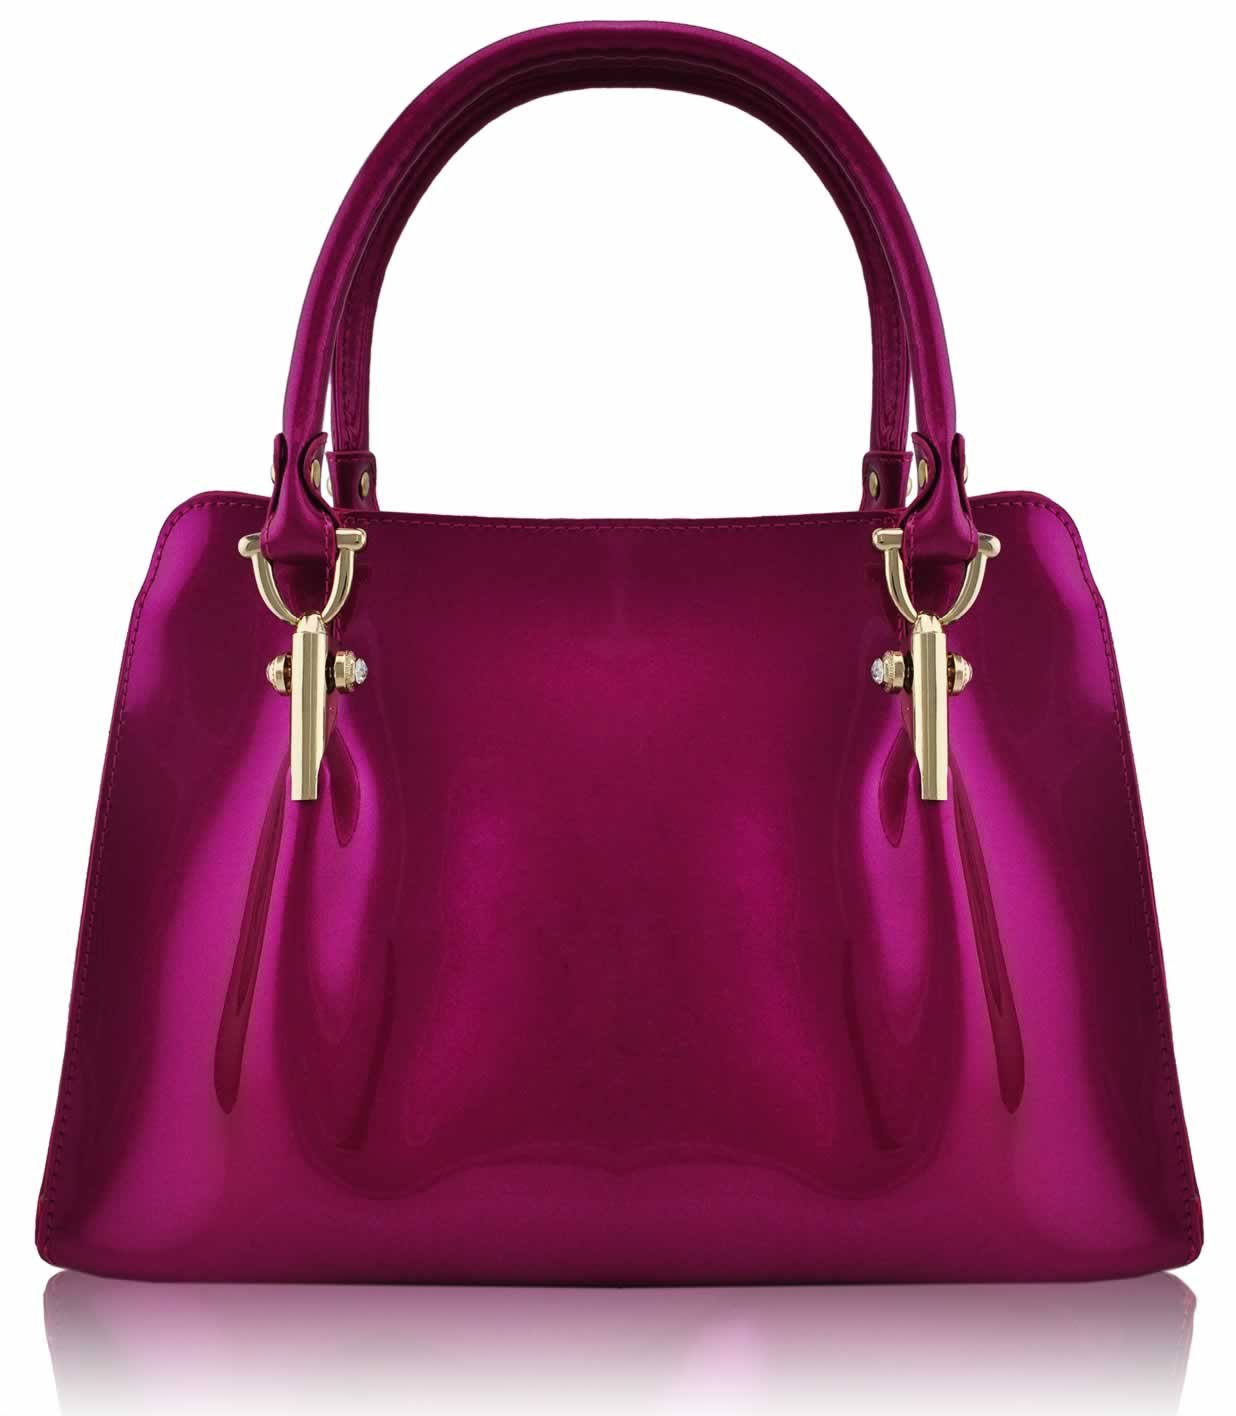 Wholesale bag - Fuchsia Fashion Grab bag